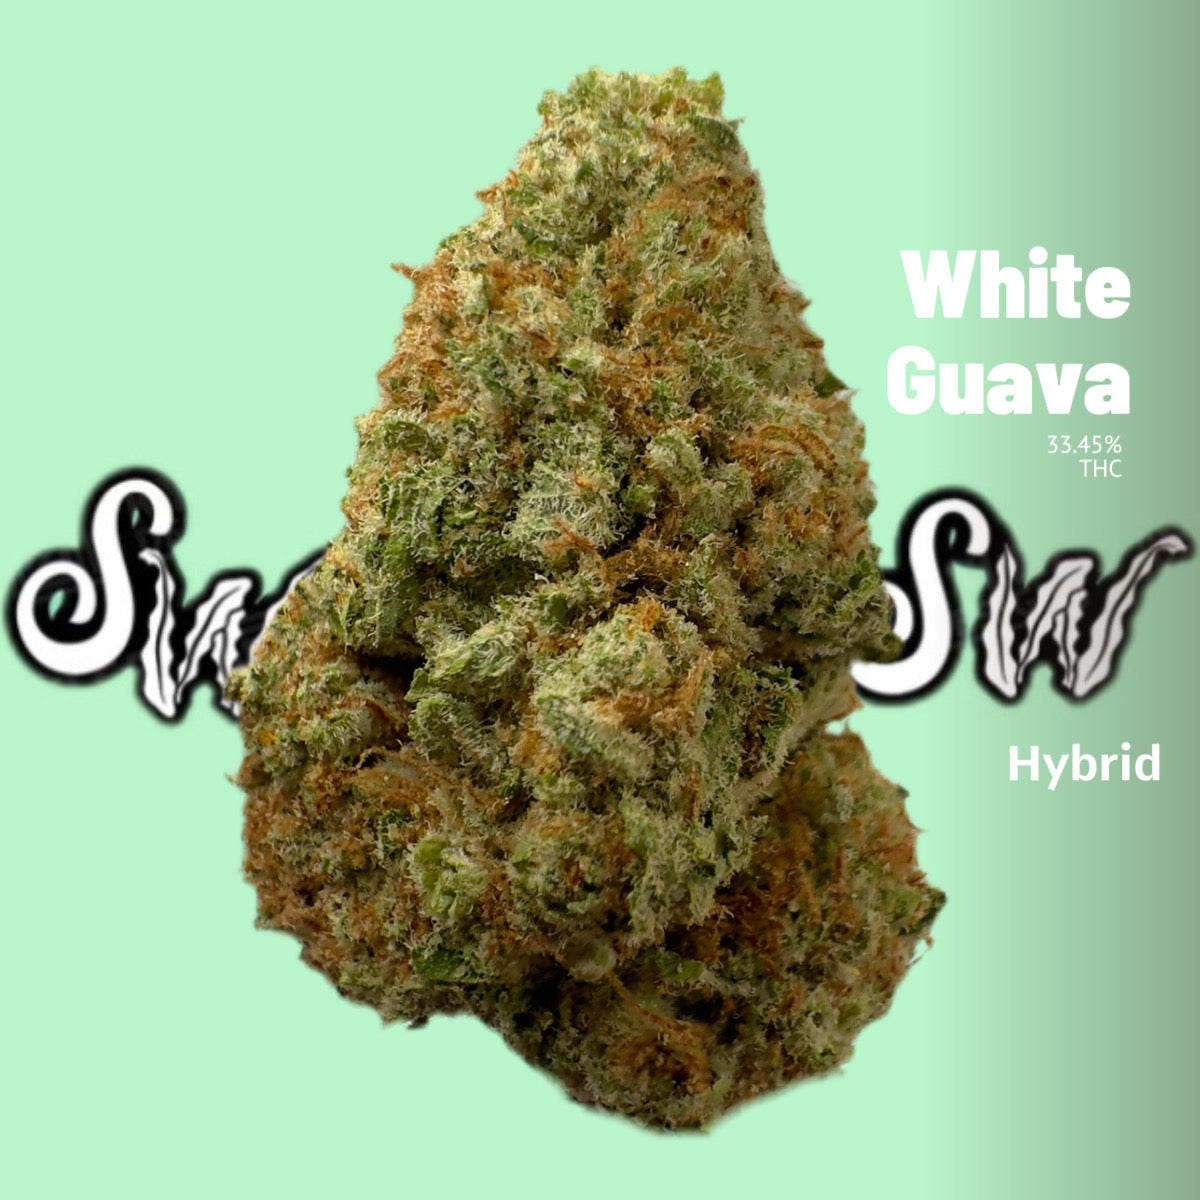 White Guava (Hybrid)